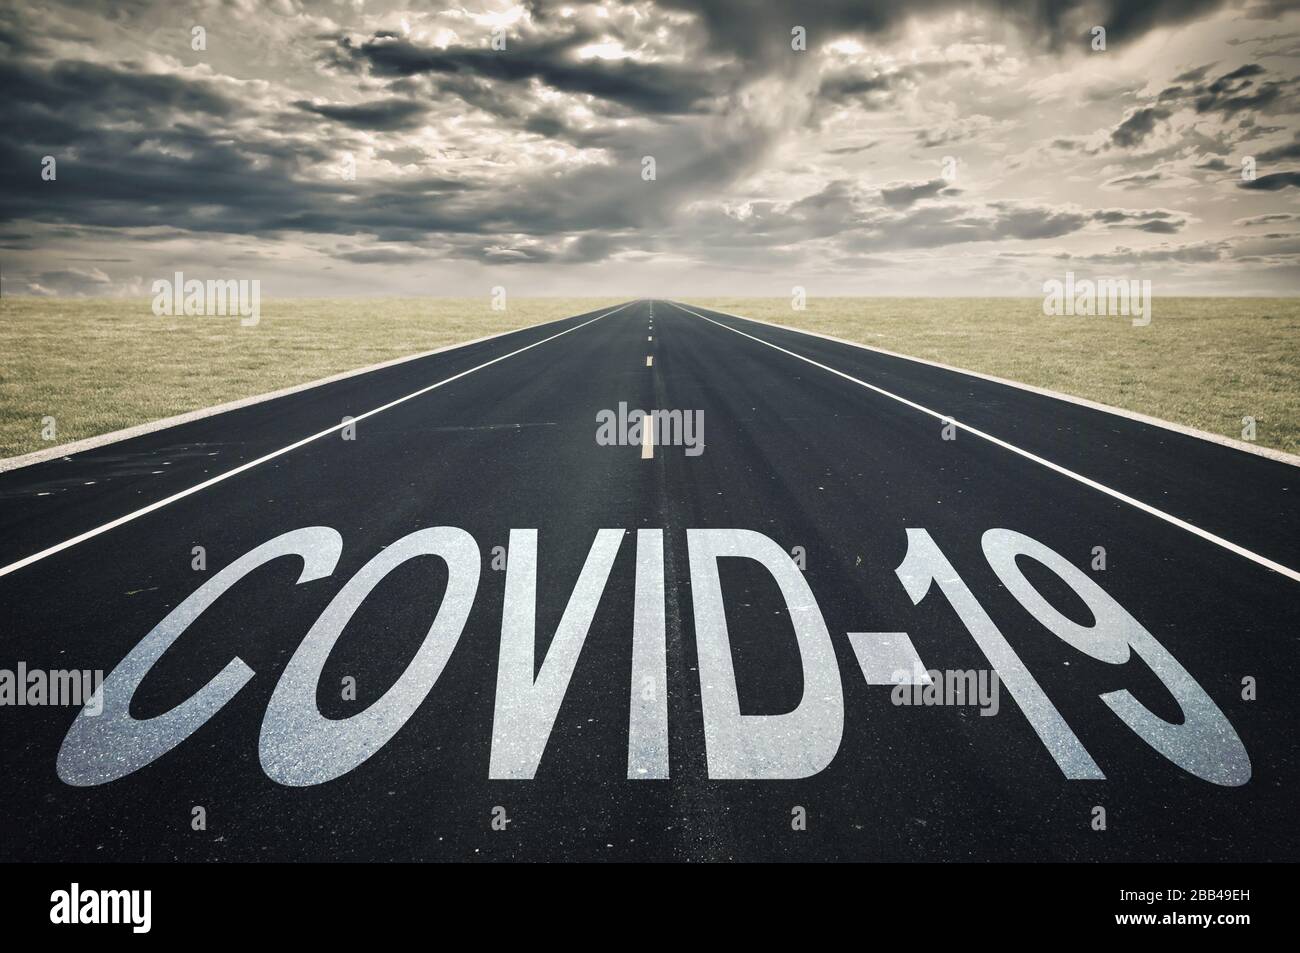 Covid-19 escrito en un camino, nubes oscuras, coronavirus epidémico concepto de crisis Foto de stock